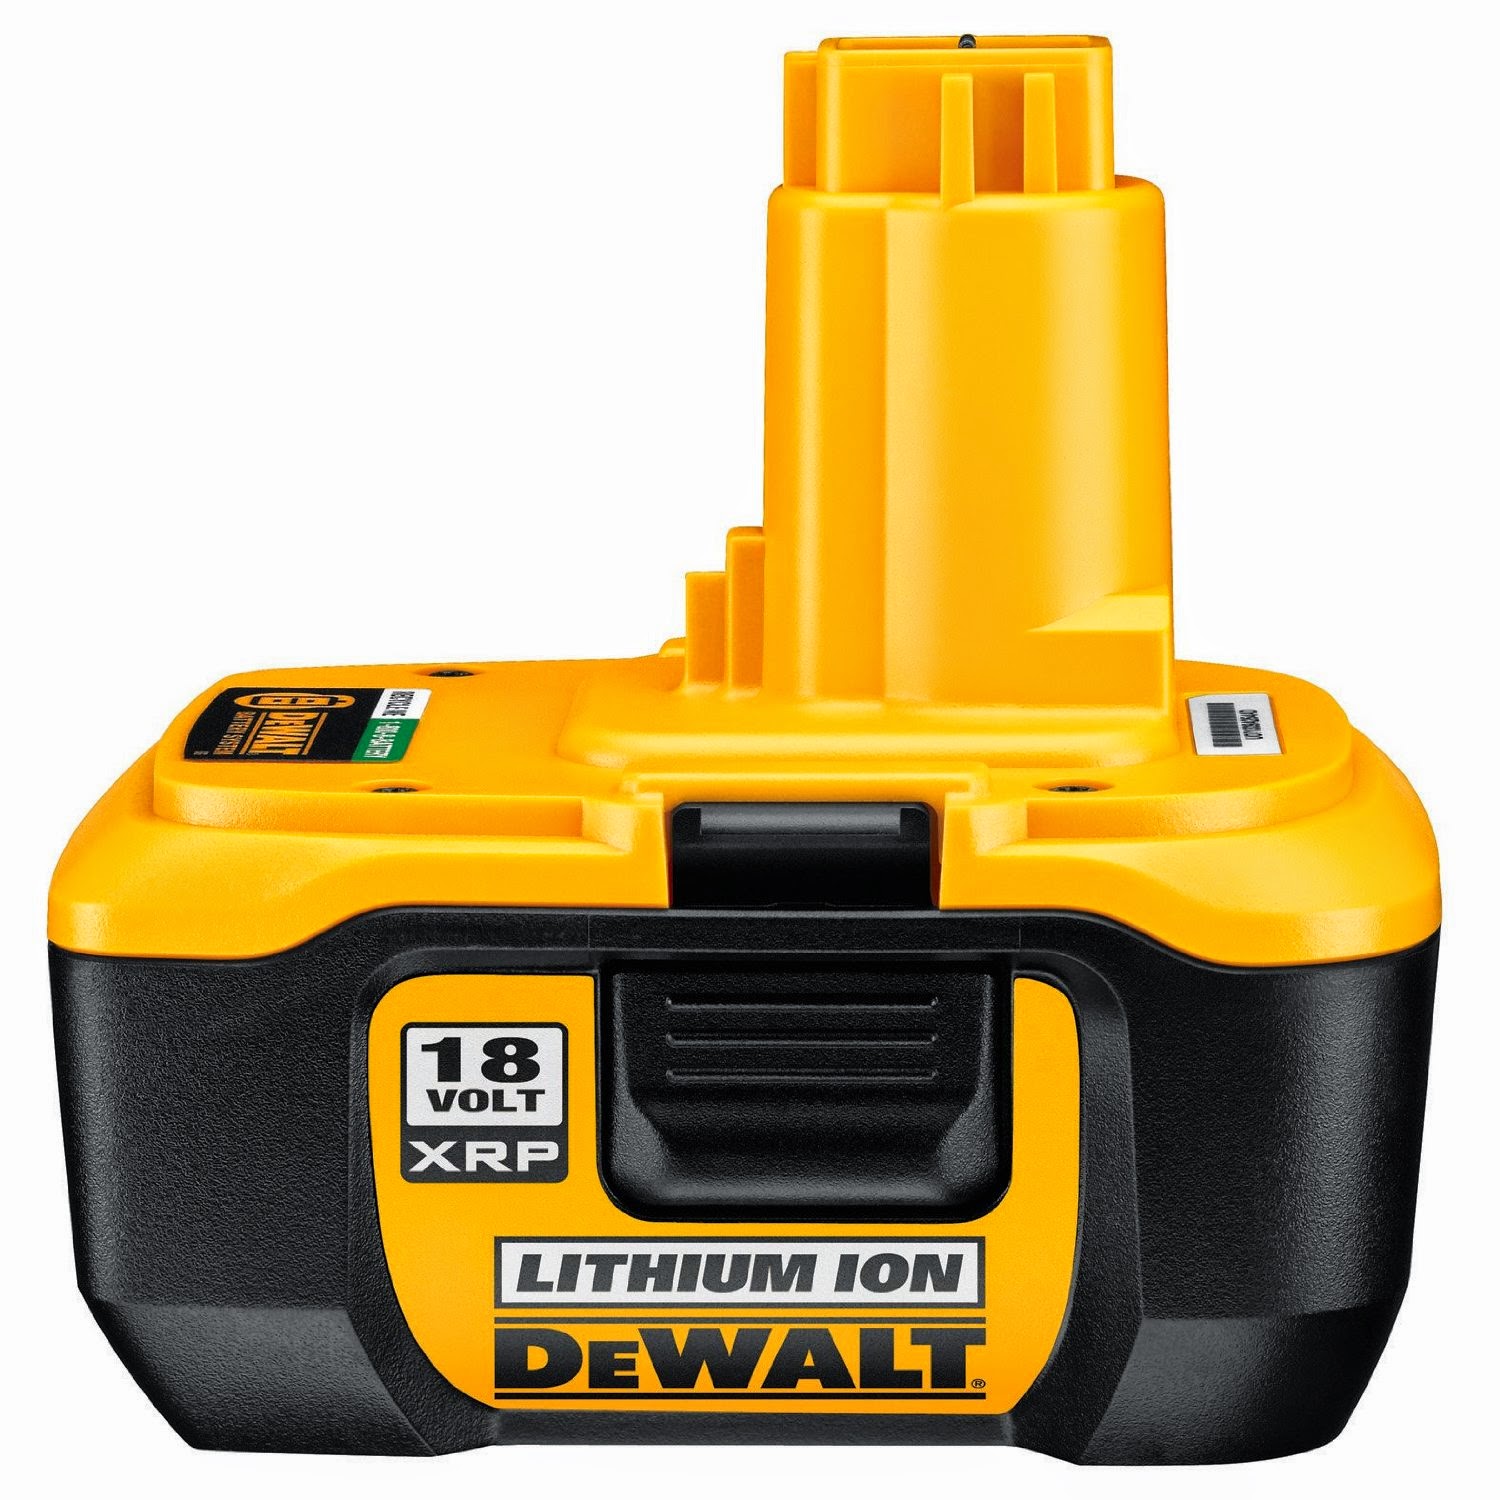 Dewalt 18v battery DeWalt DC9180 18v Lithium Ion Battery